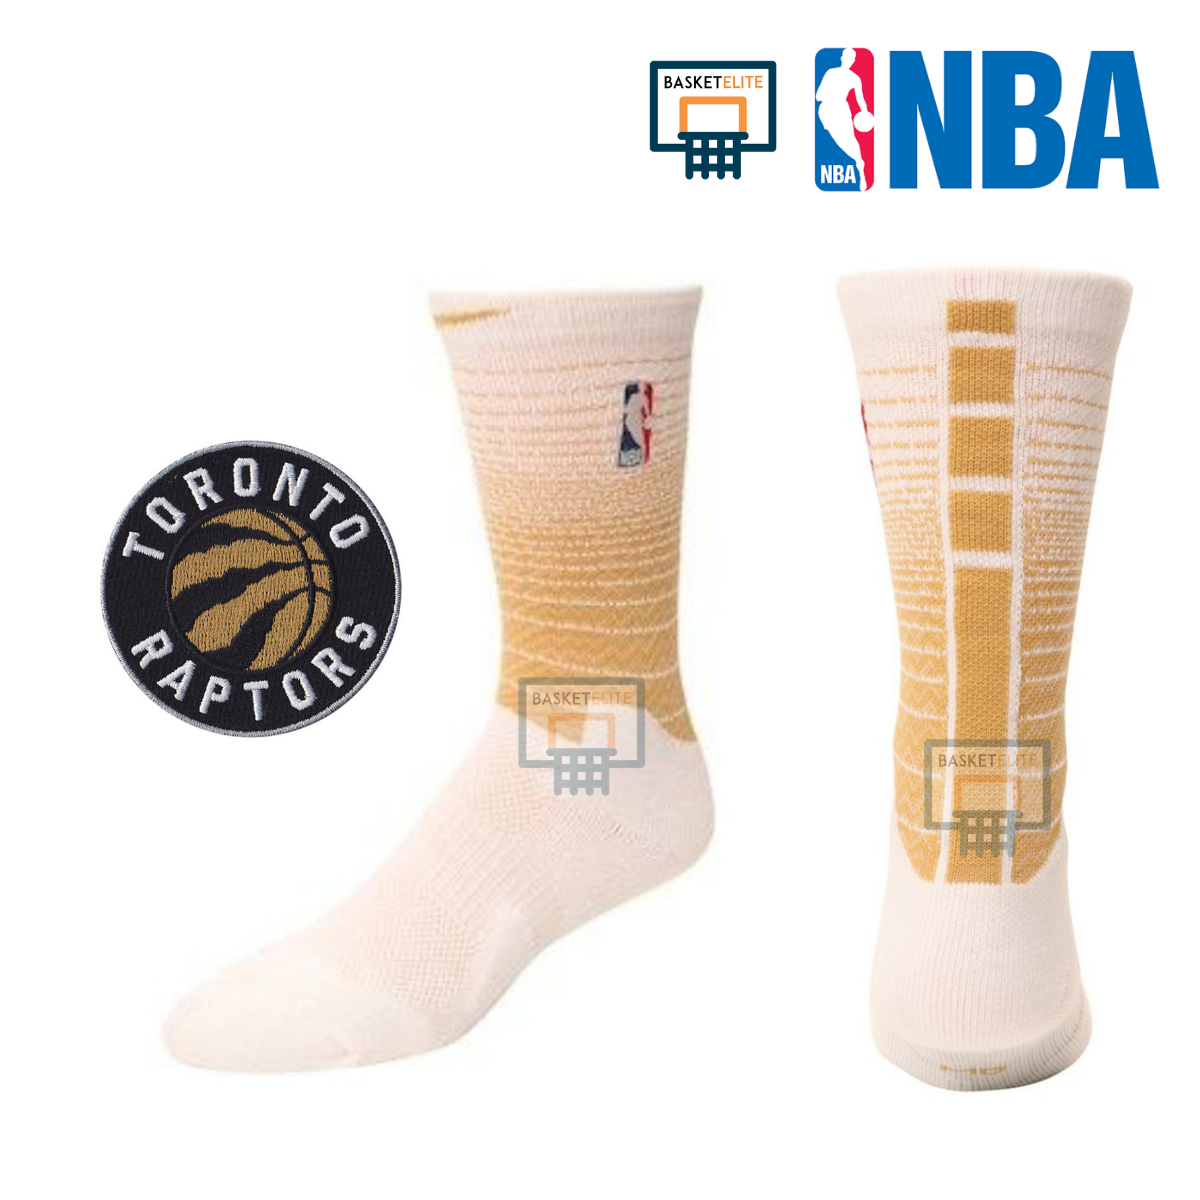 ถุงเท้าบาส NBA Elite Raptors (ทองขาว/ดำขาว)